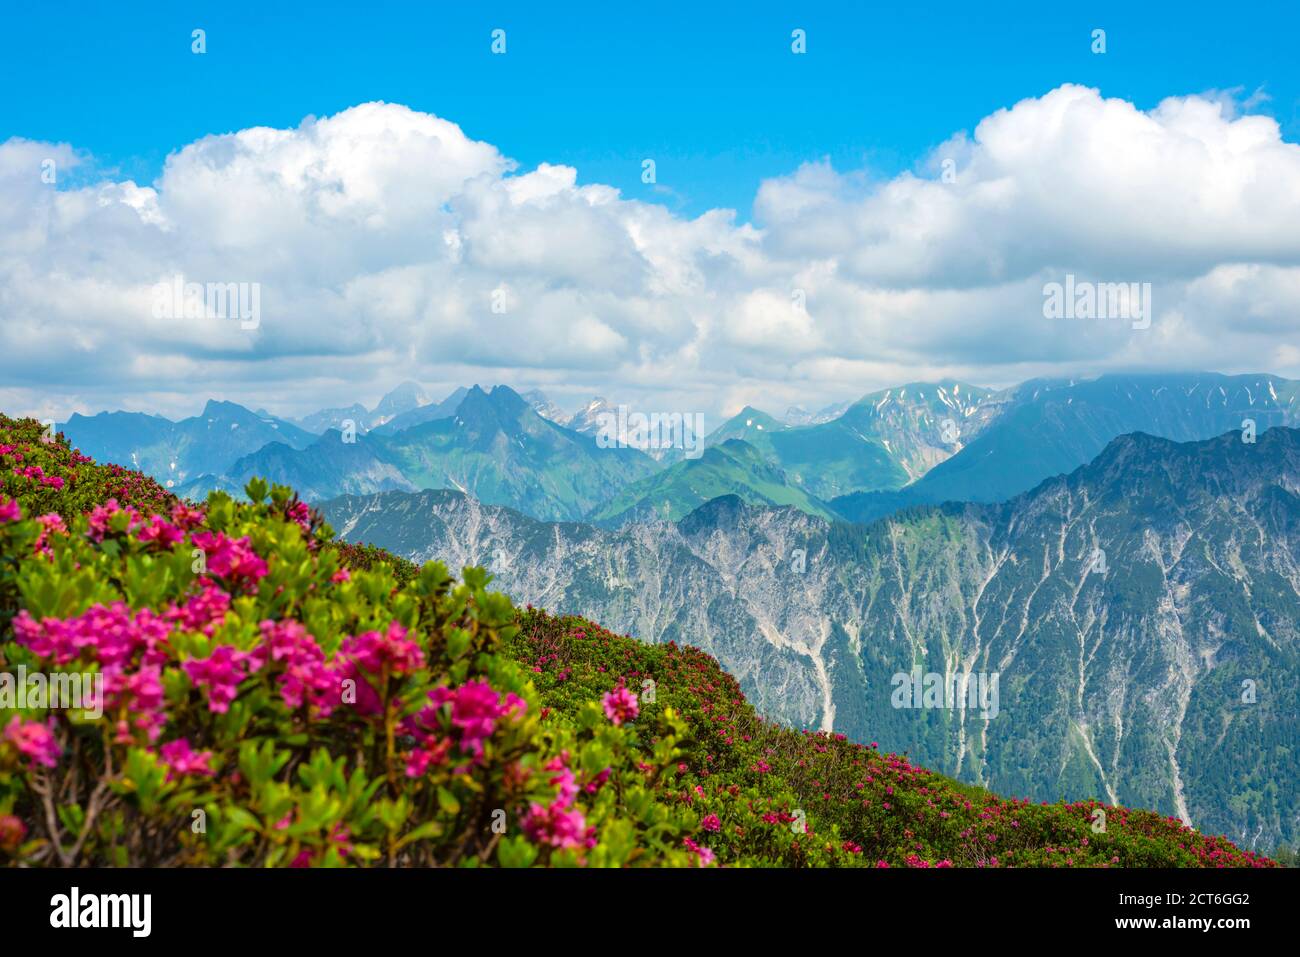 Alpenrosenblüte, Panorama vom Fellhorn, 2038m, zur Höfats, 2259m, und weitere Allgäuer Berge, Allgäuer Alpen, Allgäu, Bayern, Deutschland, Europa Stock Photo